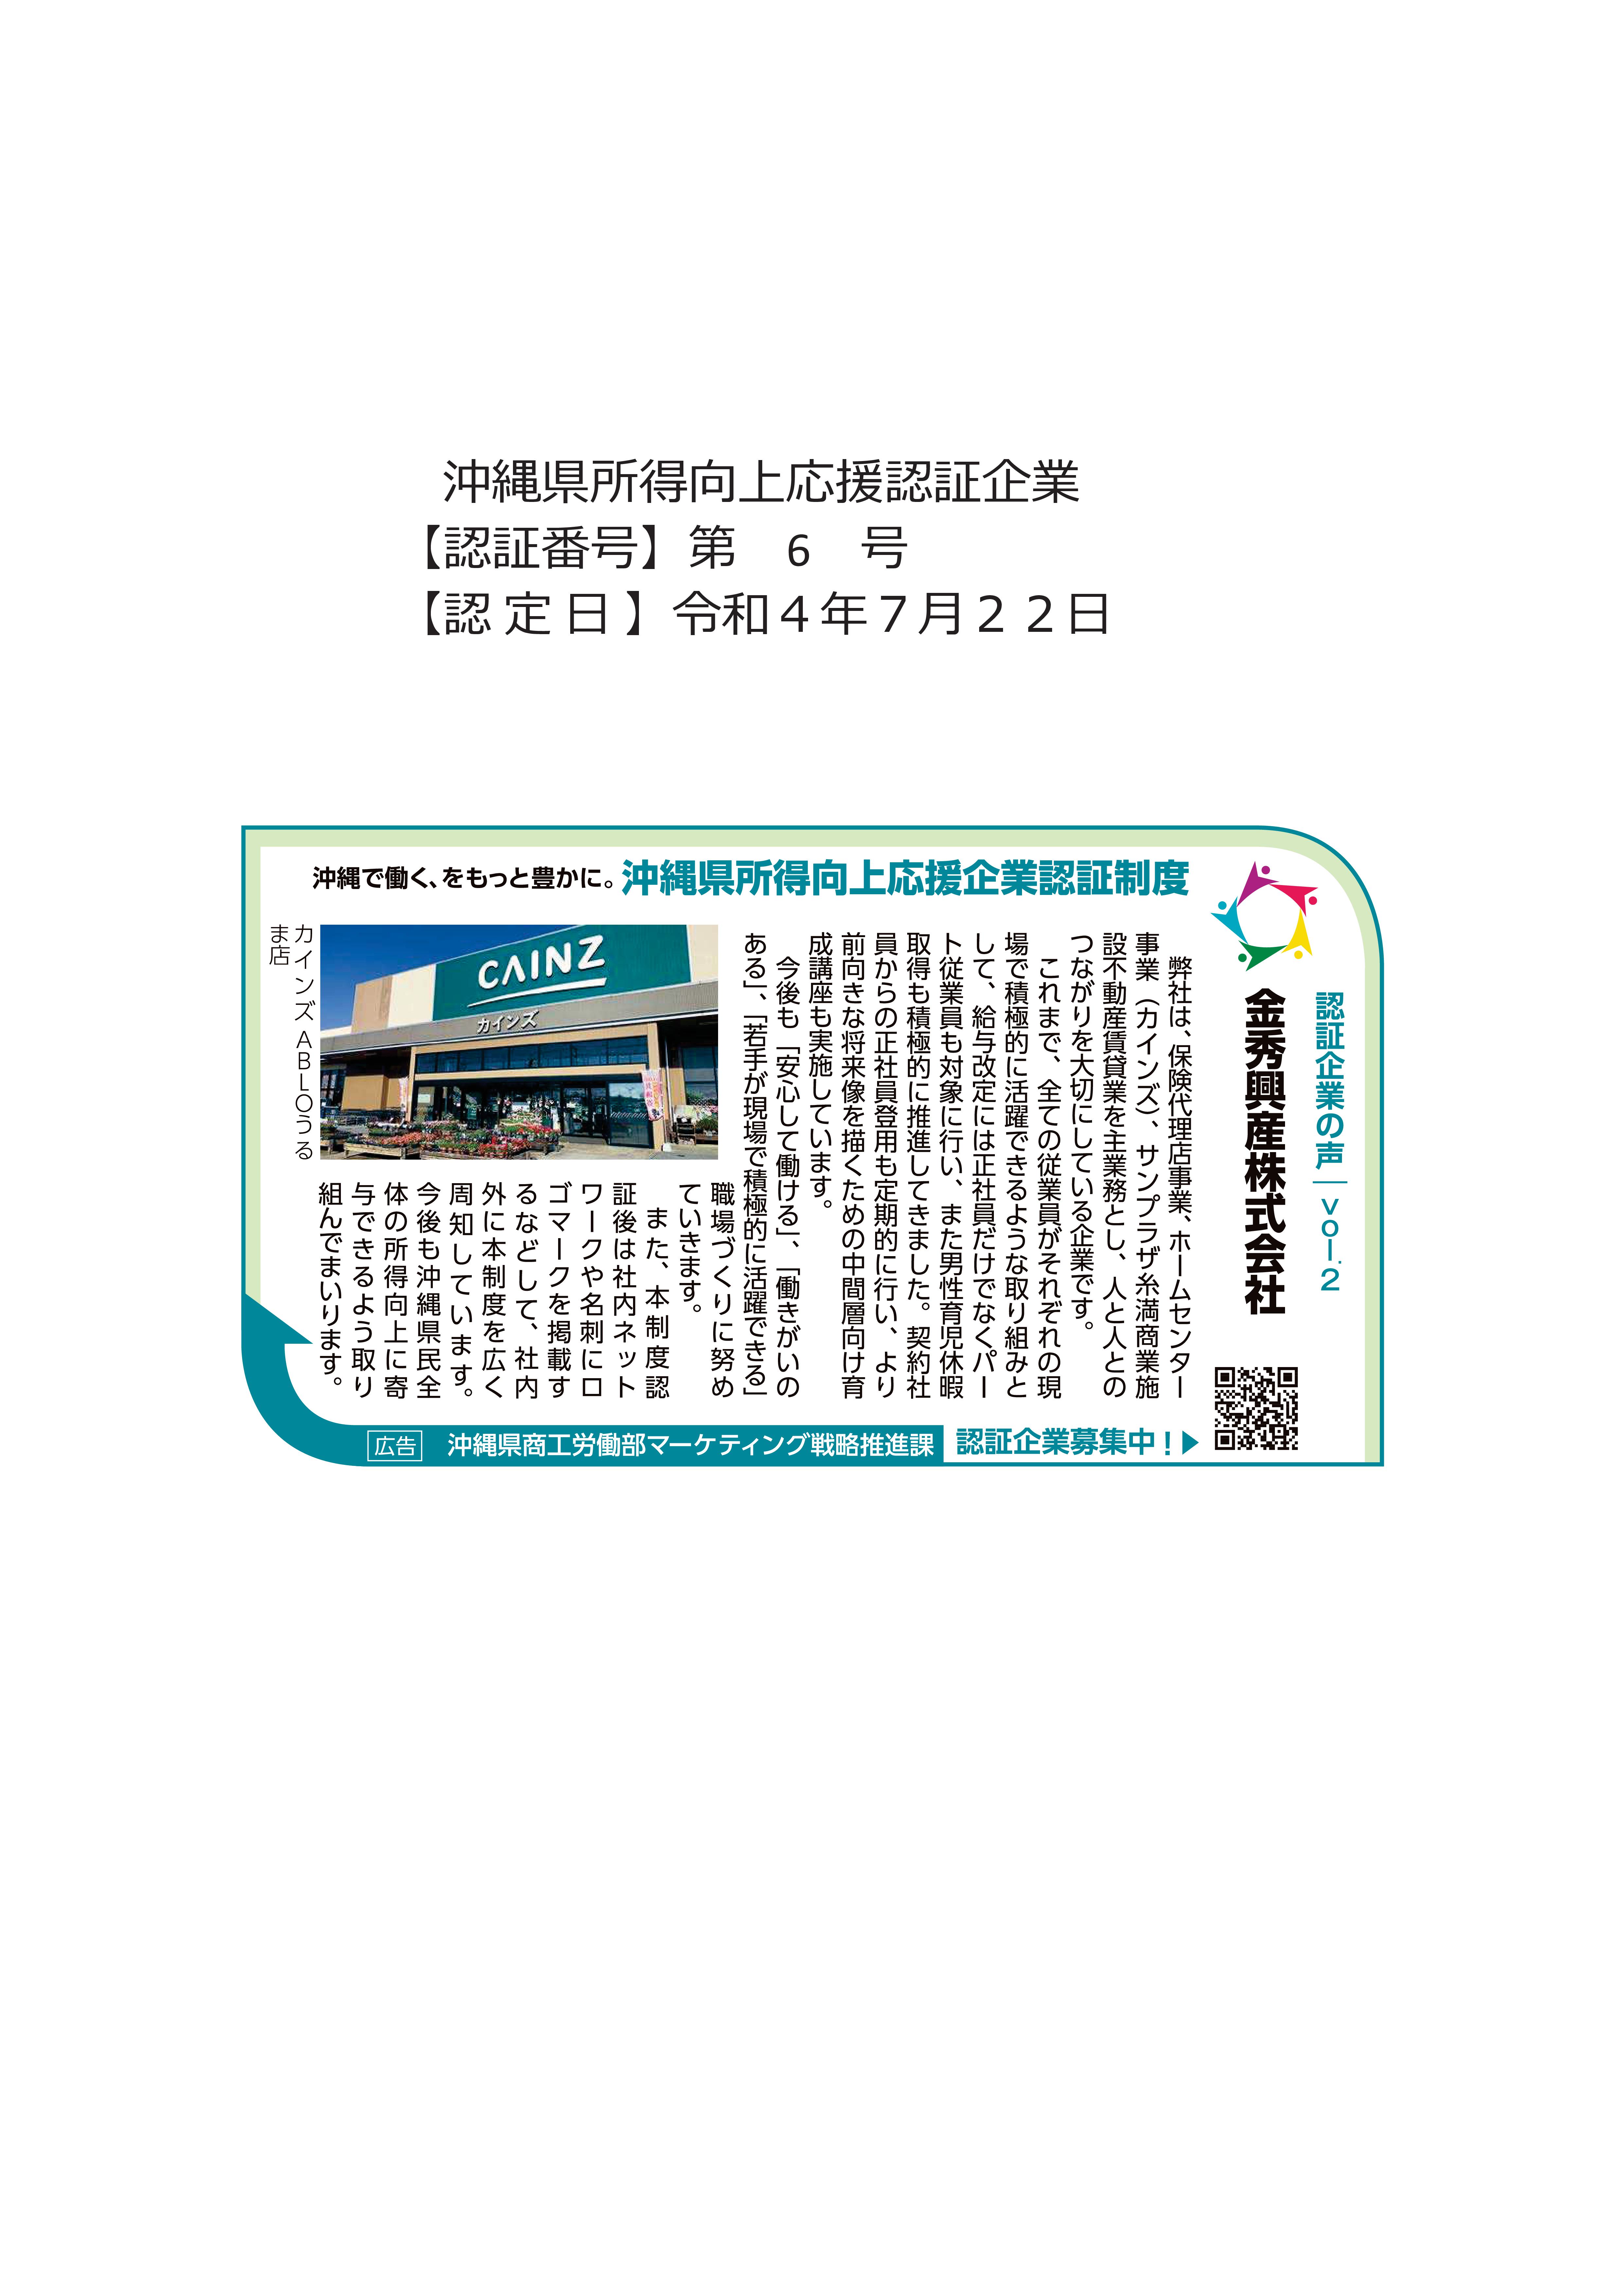 沖縄県所得向上応援認証企業の声が琉球新報へ掲載されました♪